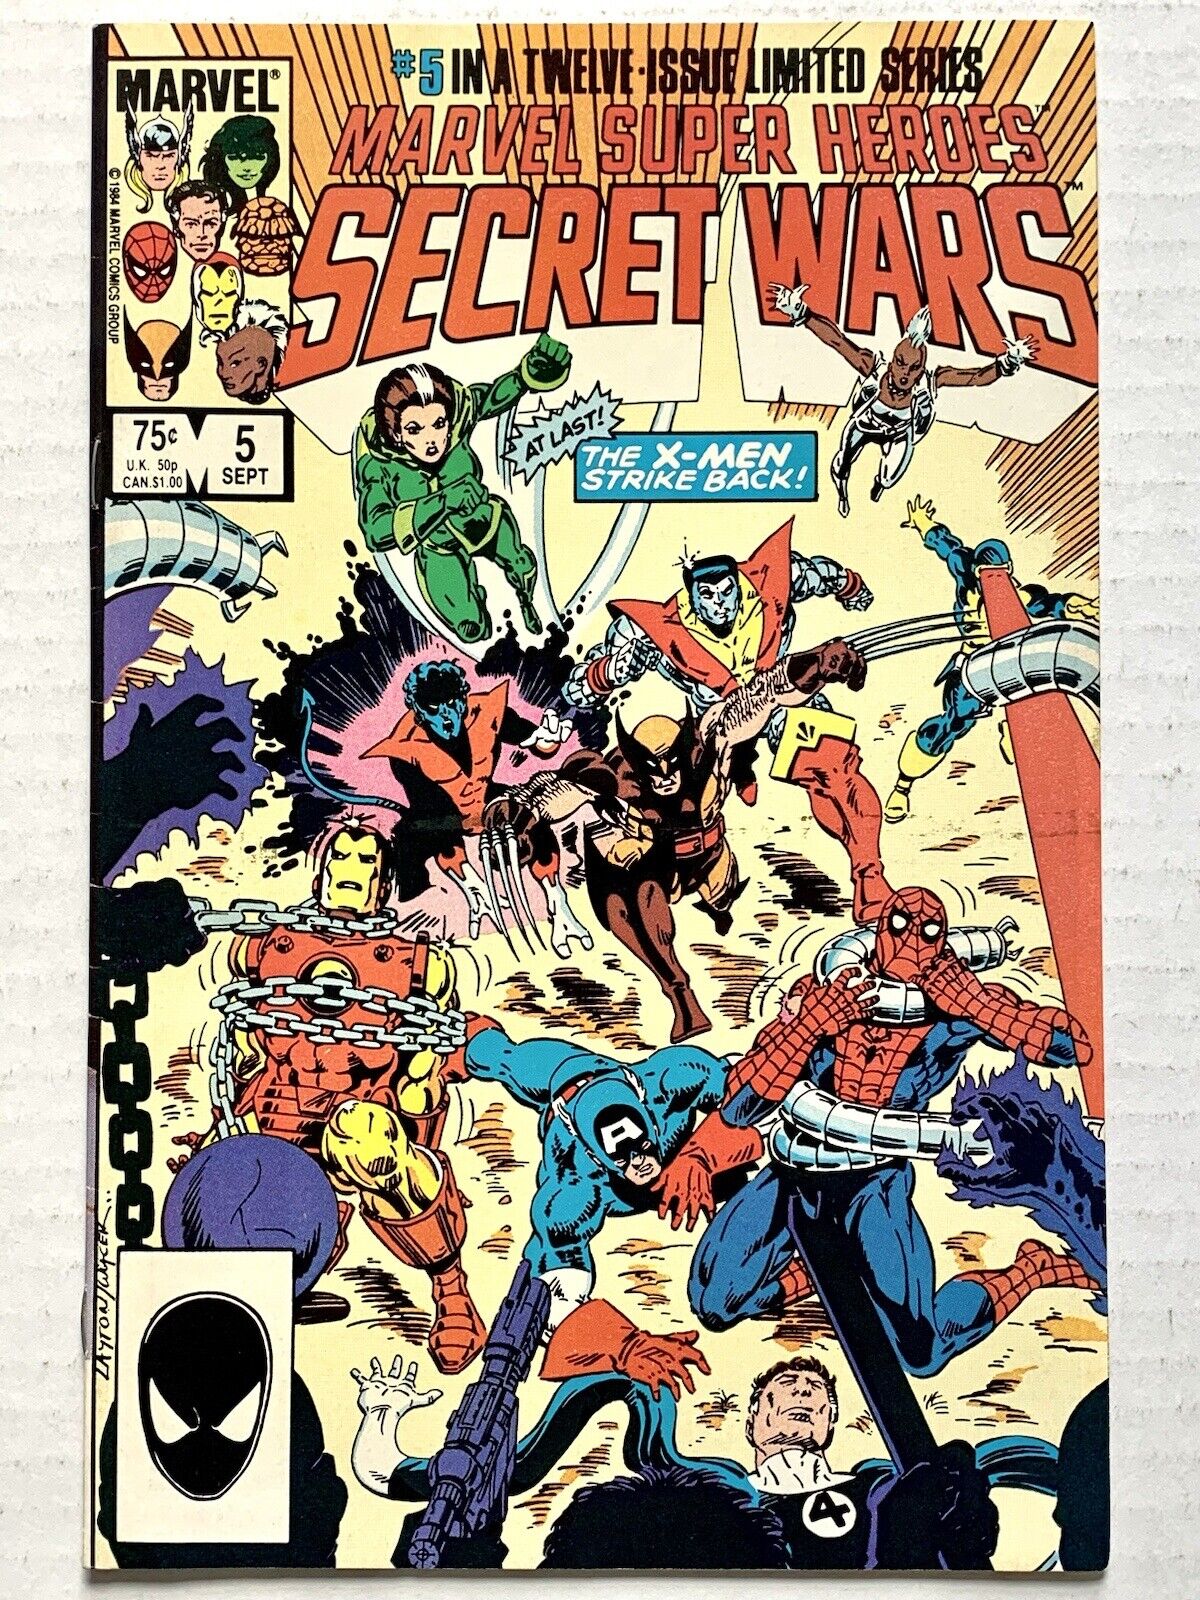 Marvel Super Heroes Secret Wars #5 (1984) X-Men, Dr. Doom (VF+/7.5) KEY -VINTAGE